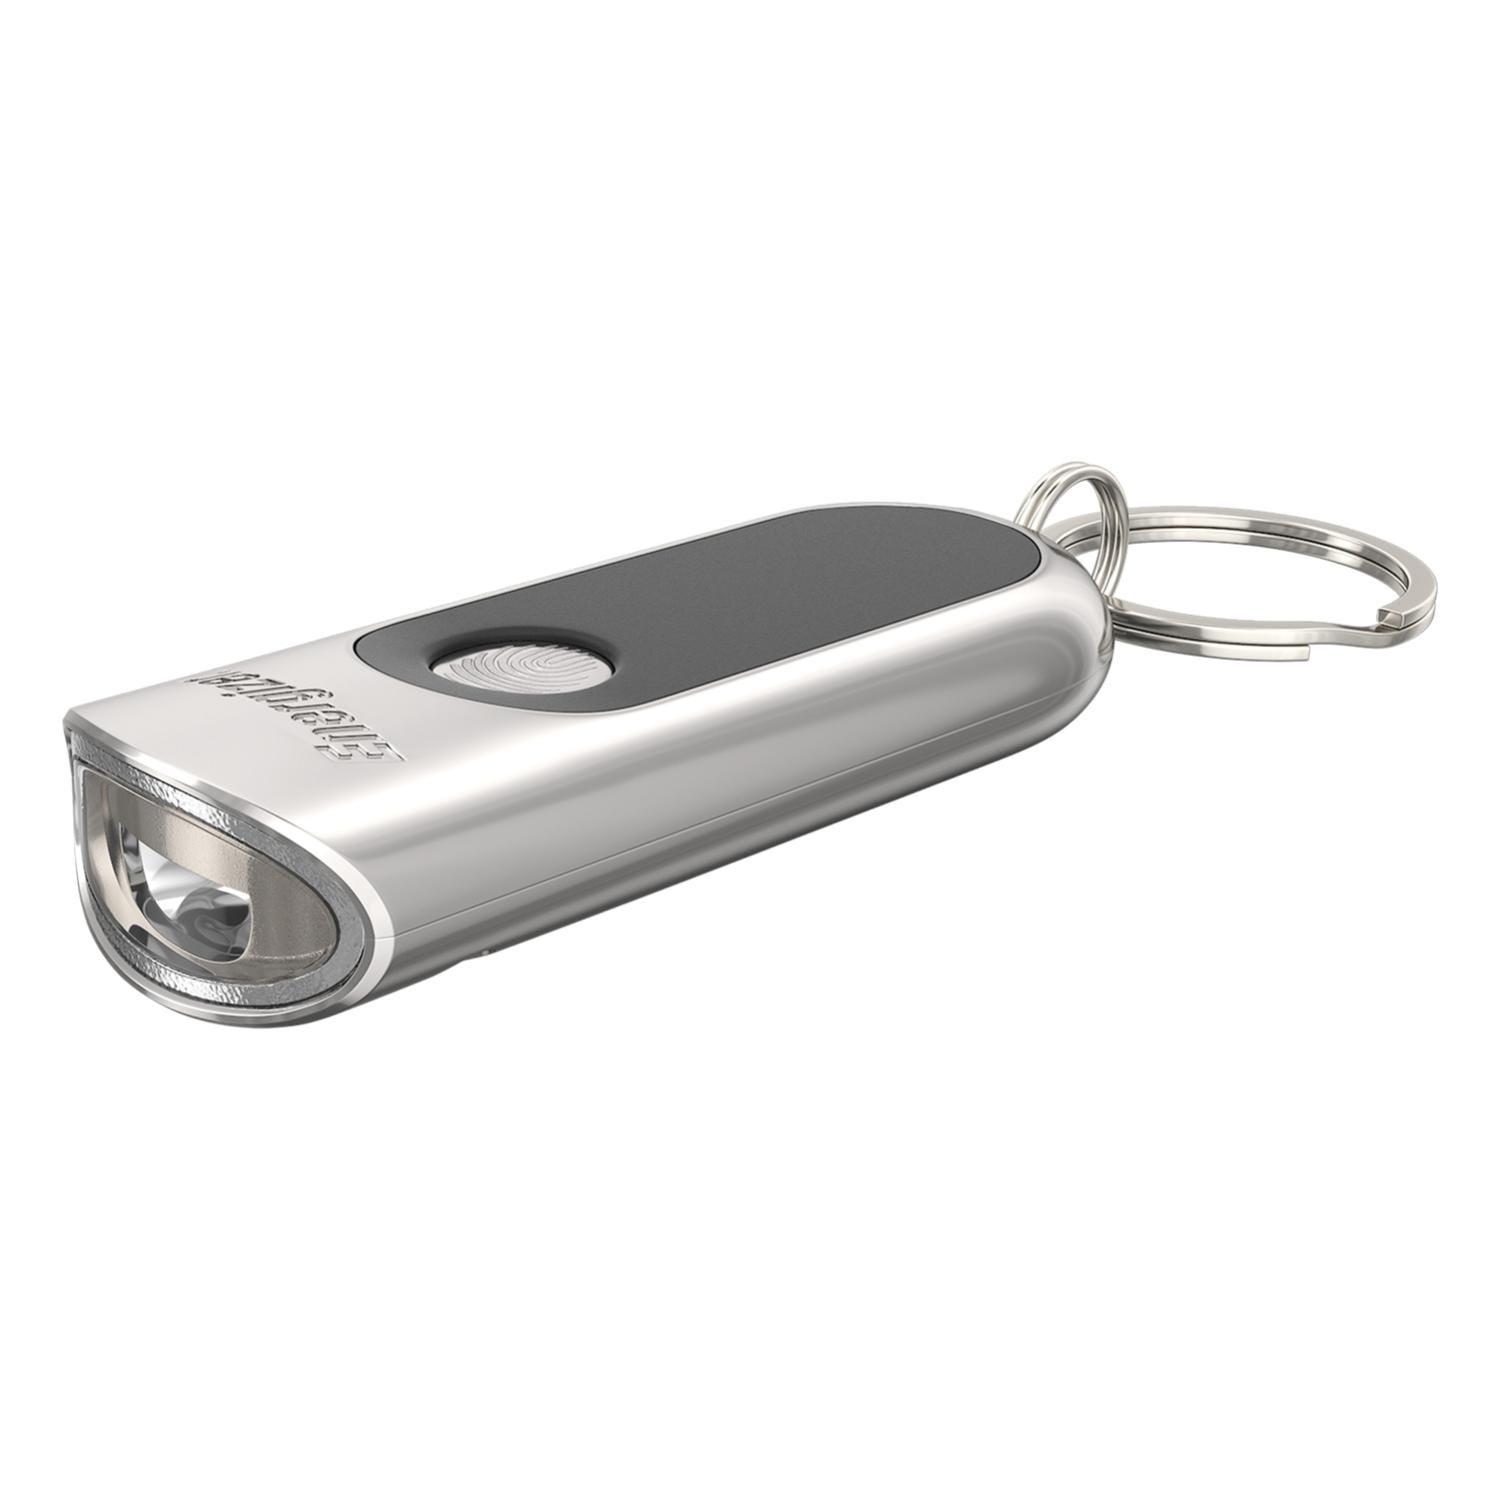 1x porte-clés avec petite lampe de poche en argent - Distribuez